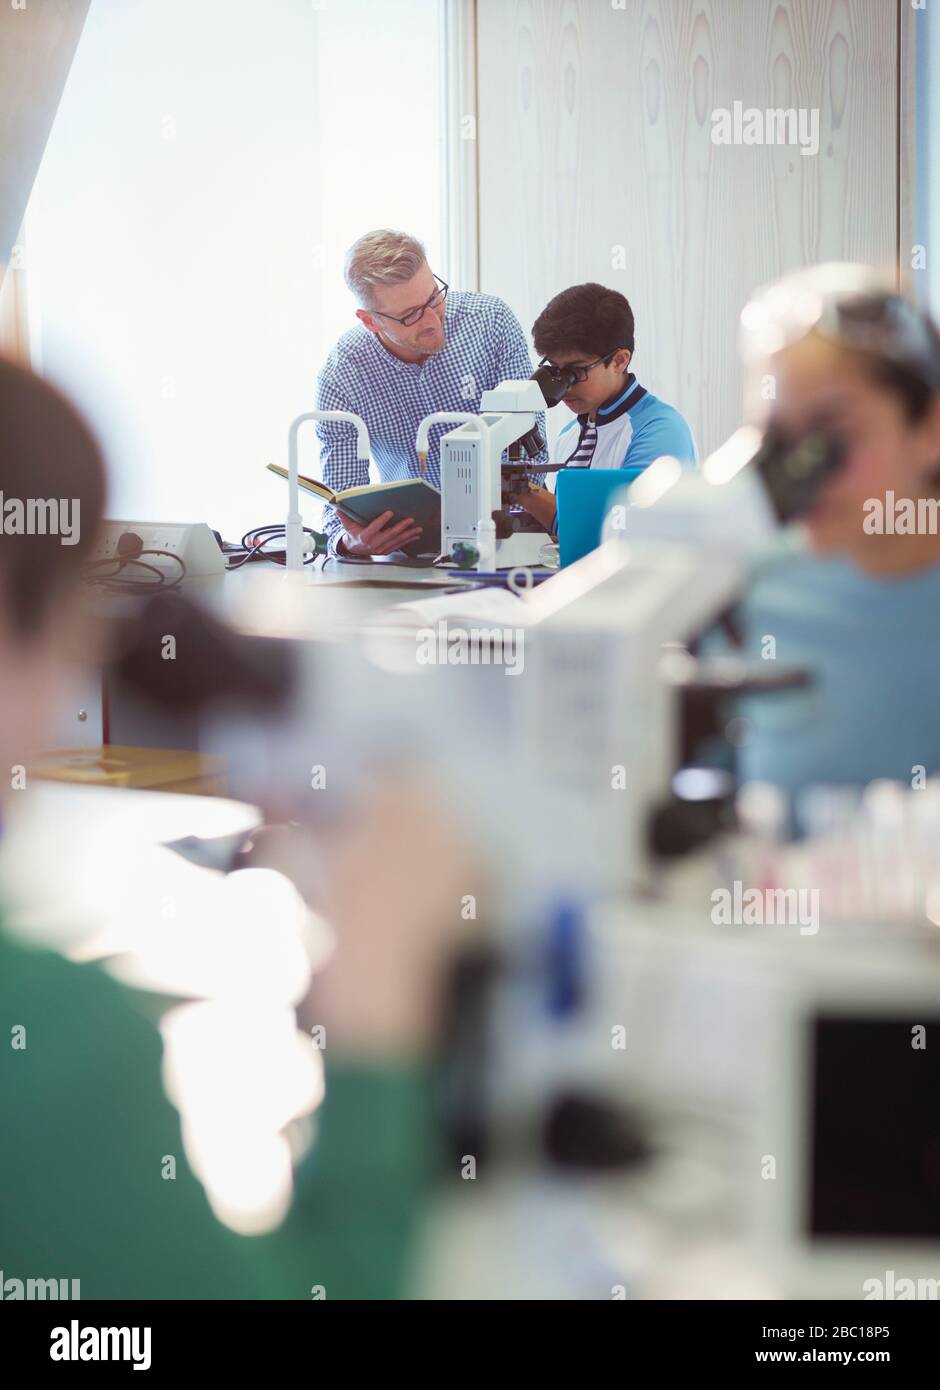 Professeur de sexe masculin et étudiant de garçon au microscope, réalisation d'expériences scientifiques en salle de classe de laboratoire Banque D'Images